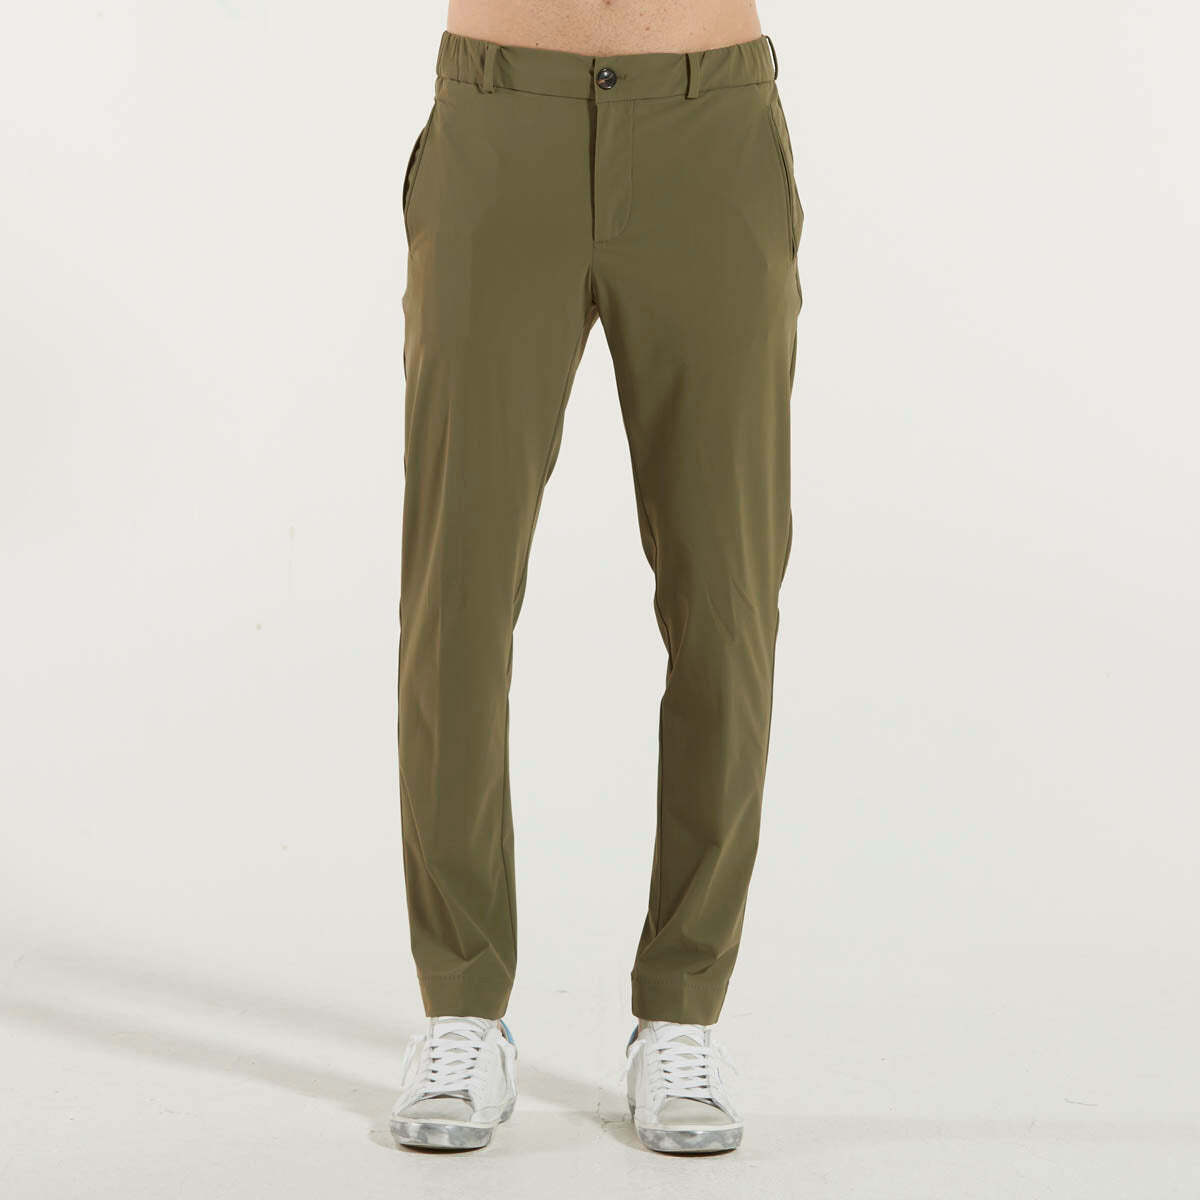 Vêtements Homme Pantalons se mesure à lendroit le plus fort au dessous de la taille, au niveau des fessescci Designs  Vert